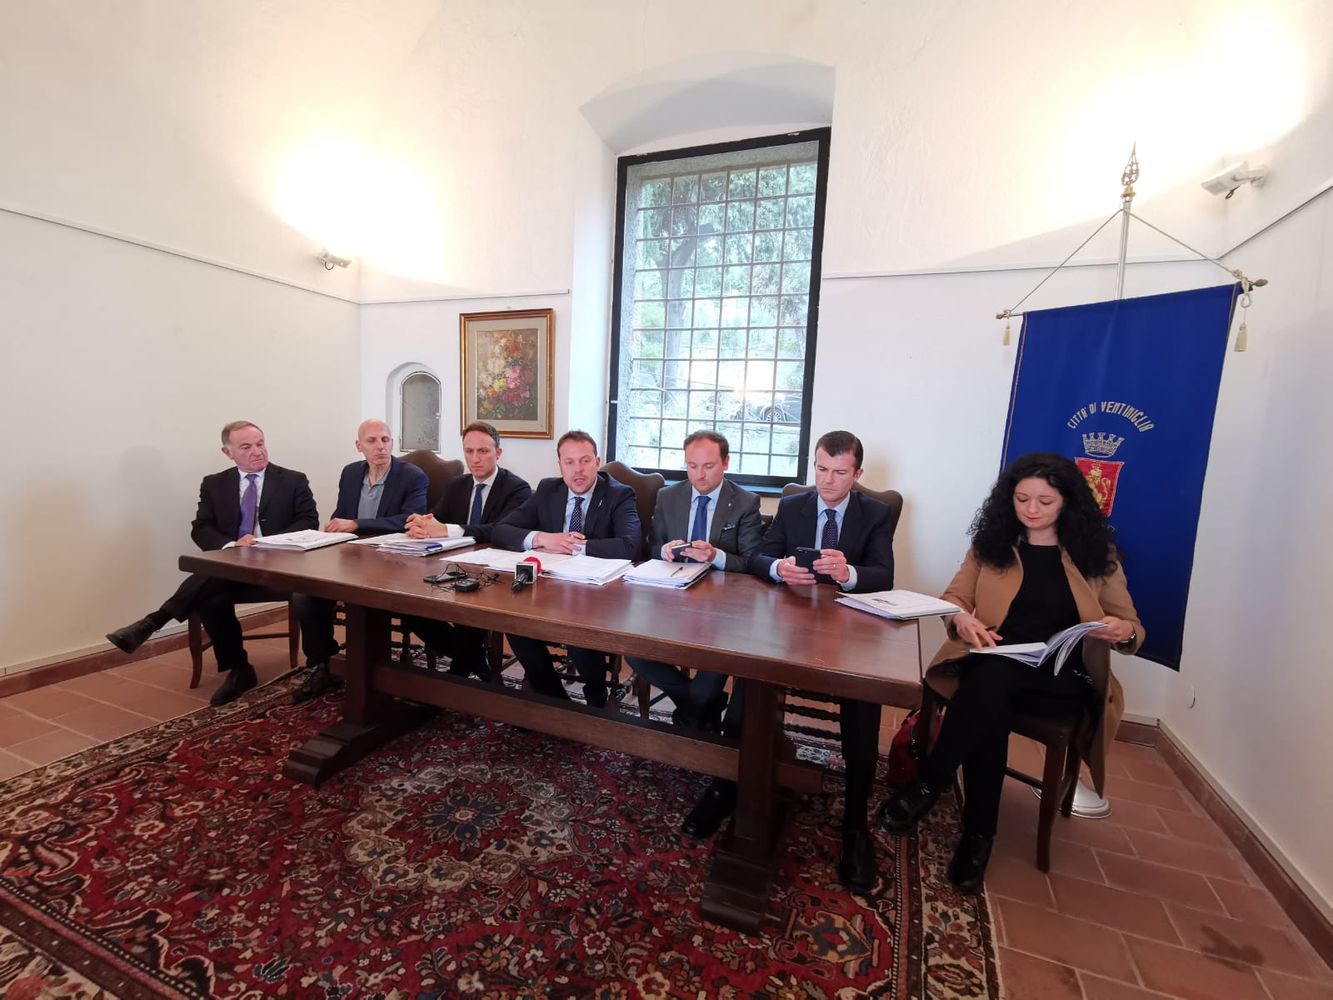 Comitato Bilaterale Schengen Ventimiglia aprile 2019